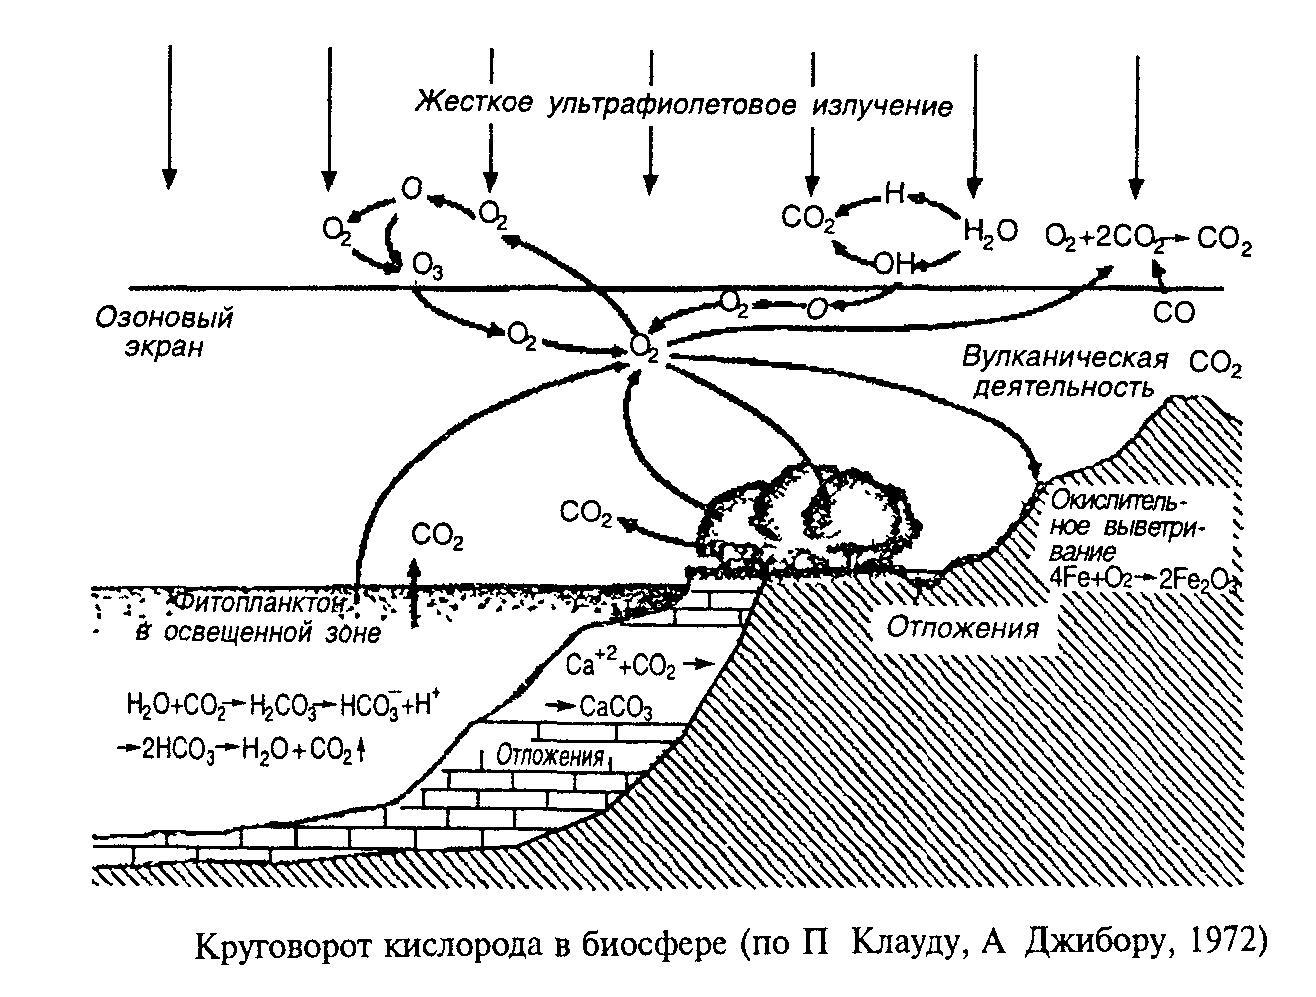 Круговорот кислорода процессы. Круговорот кислорода (по е. а. Криксунову и др., 1995). Схема круговорота кислорода в биосфере схема. Круговорот кислорода в биосфере схема. Биогеохимический цикл кислорода схема.